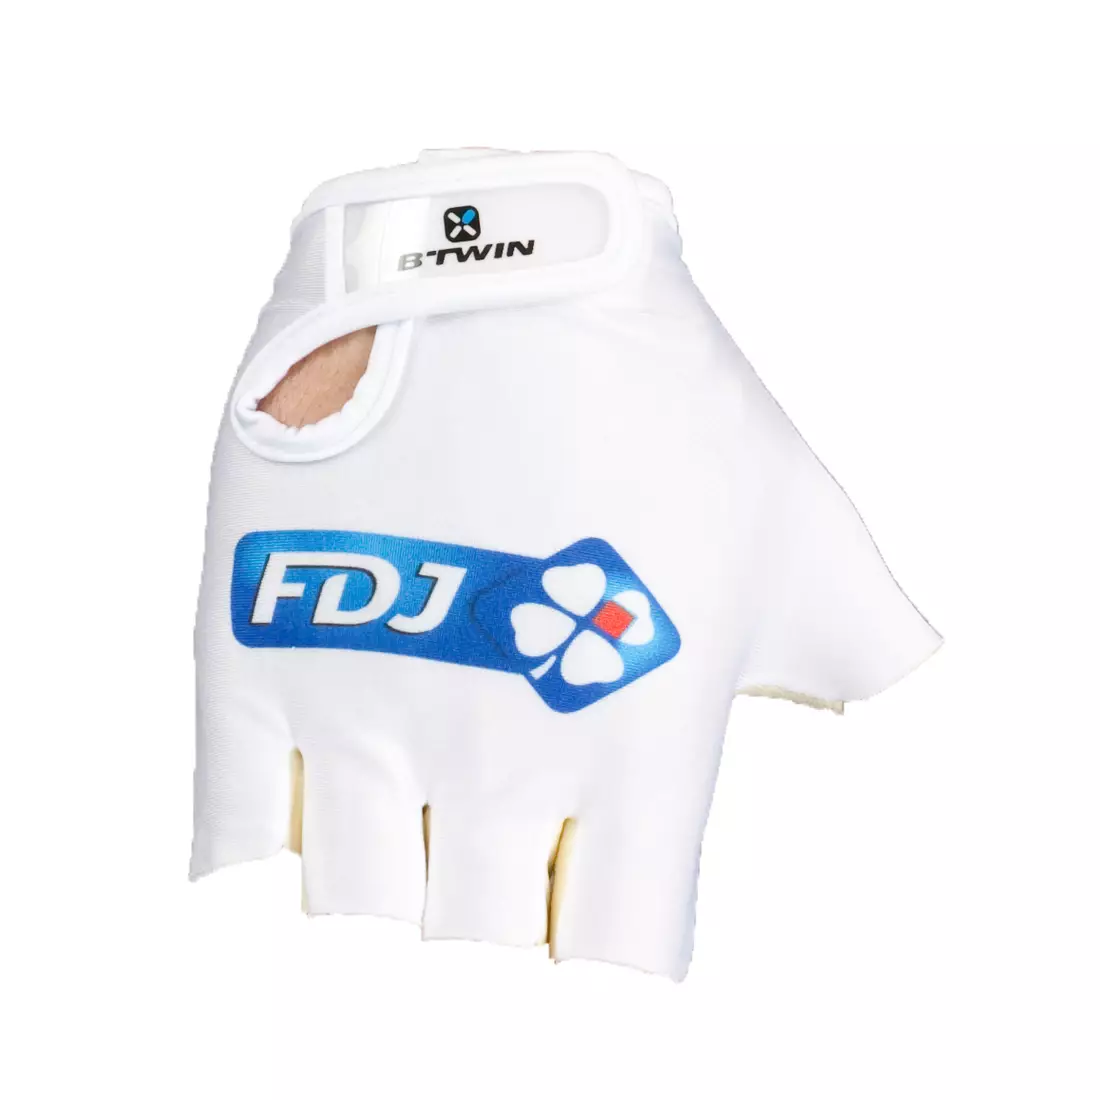 FDJ 2015 cycling gloves